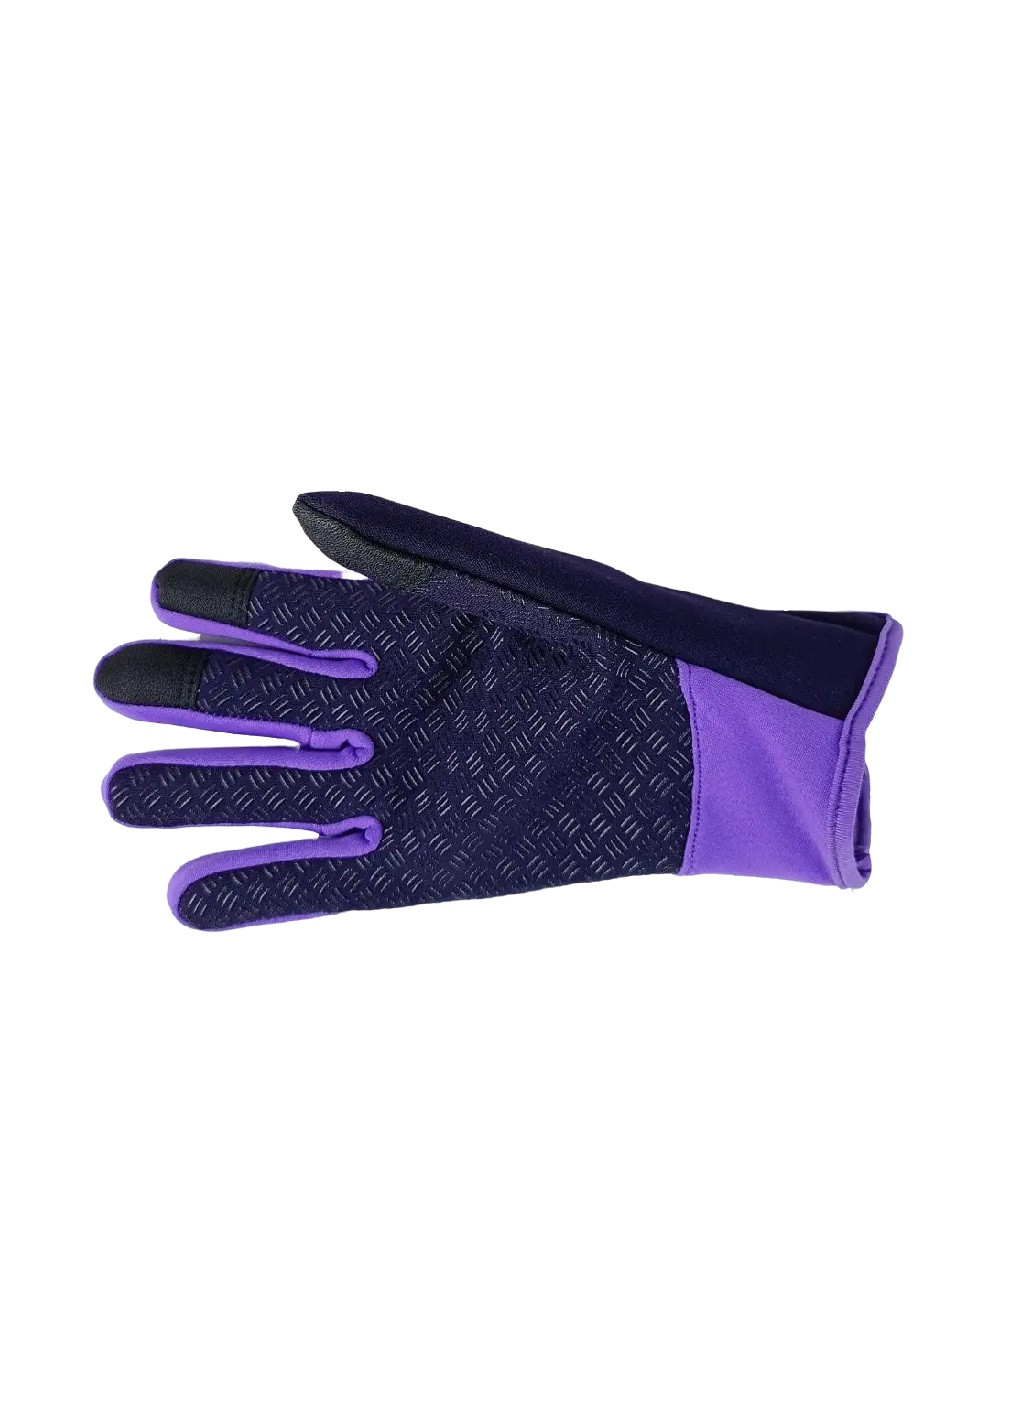 Велоперчатки велосипедные перчатки с водоотталкивающим сенсорным покрытием спандекс флис (476031-Prob) Фиолетовые S Unbranded (275863532)